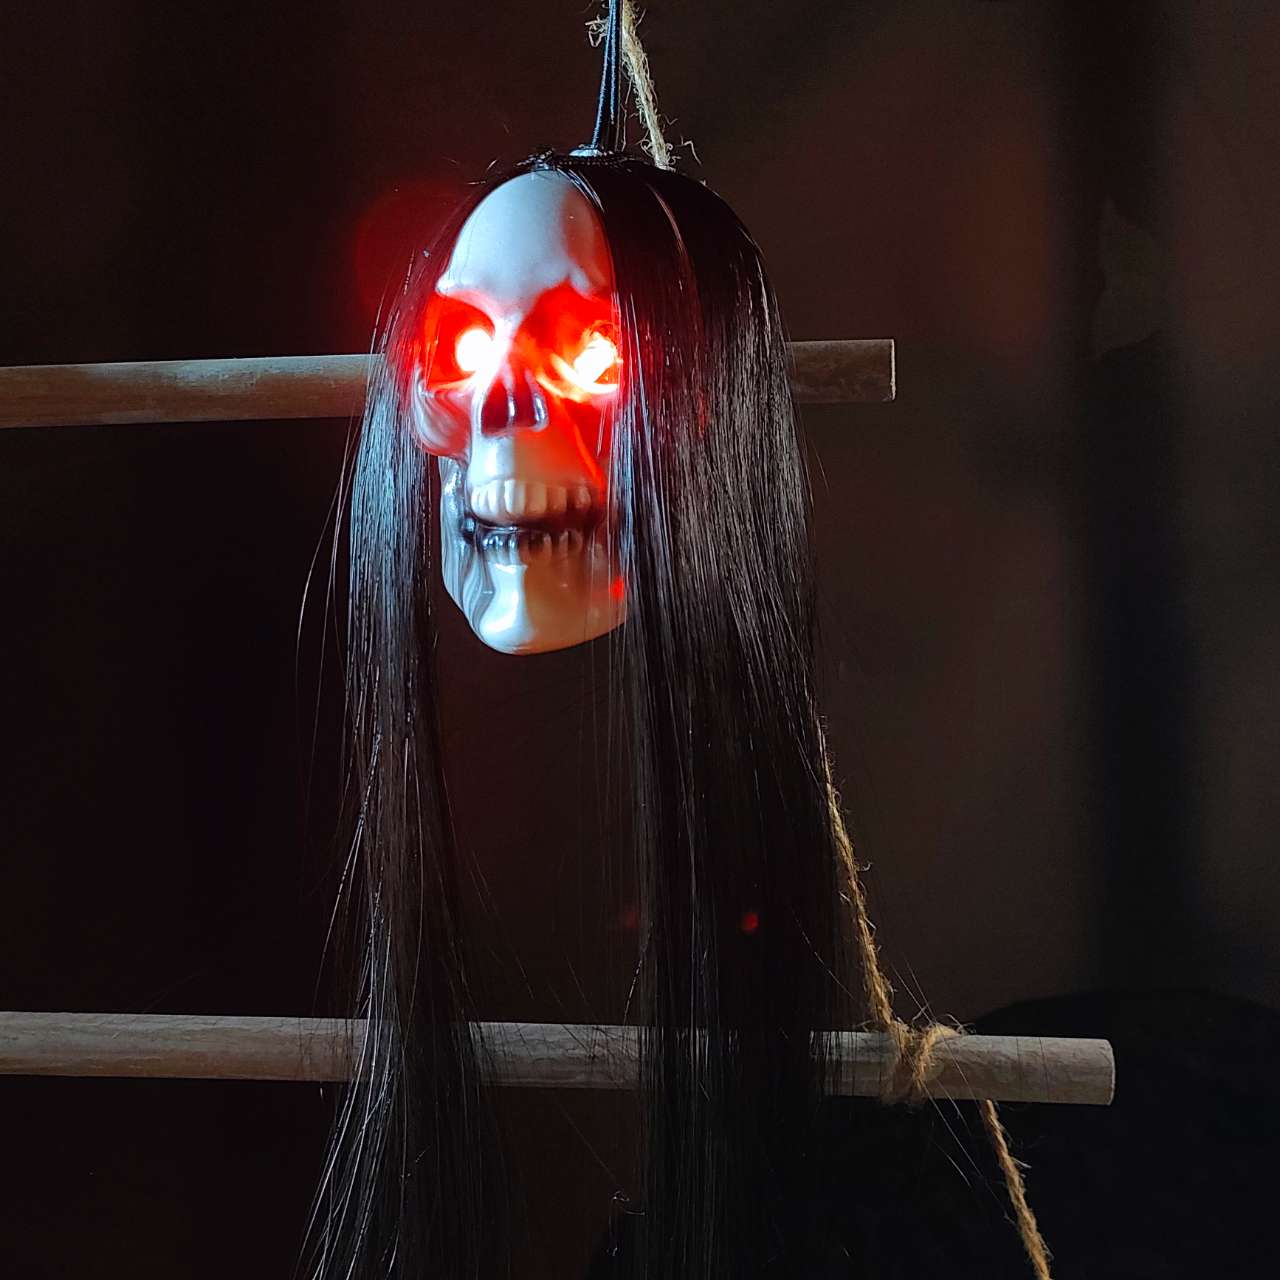 Halloween hengende spøkelsesskalle med langt hår glødende øyne terror hodeskalle spøkelseshus hode skjelett rekvisitter 2023 Halloween dekorasjon